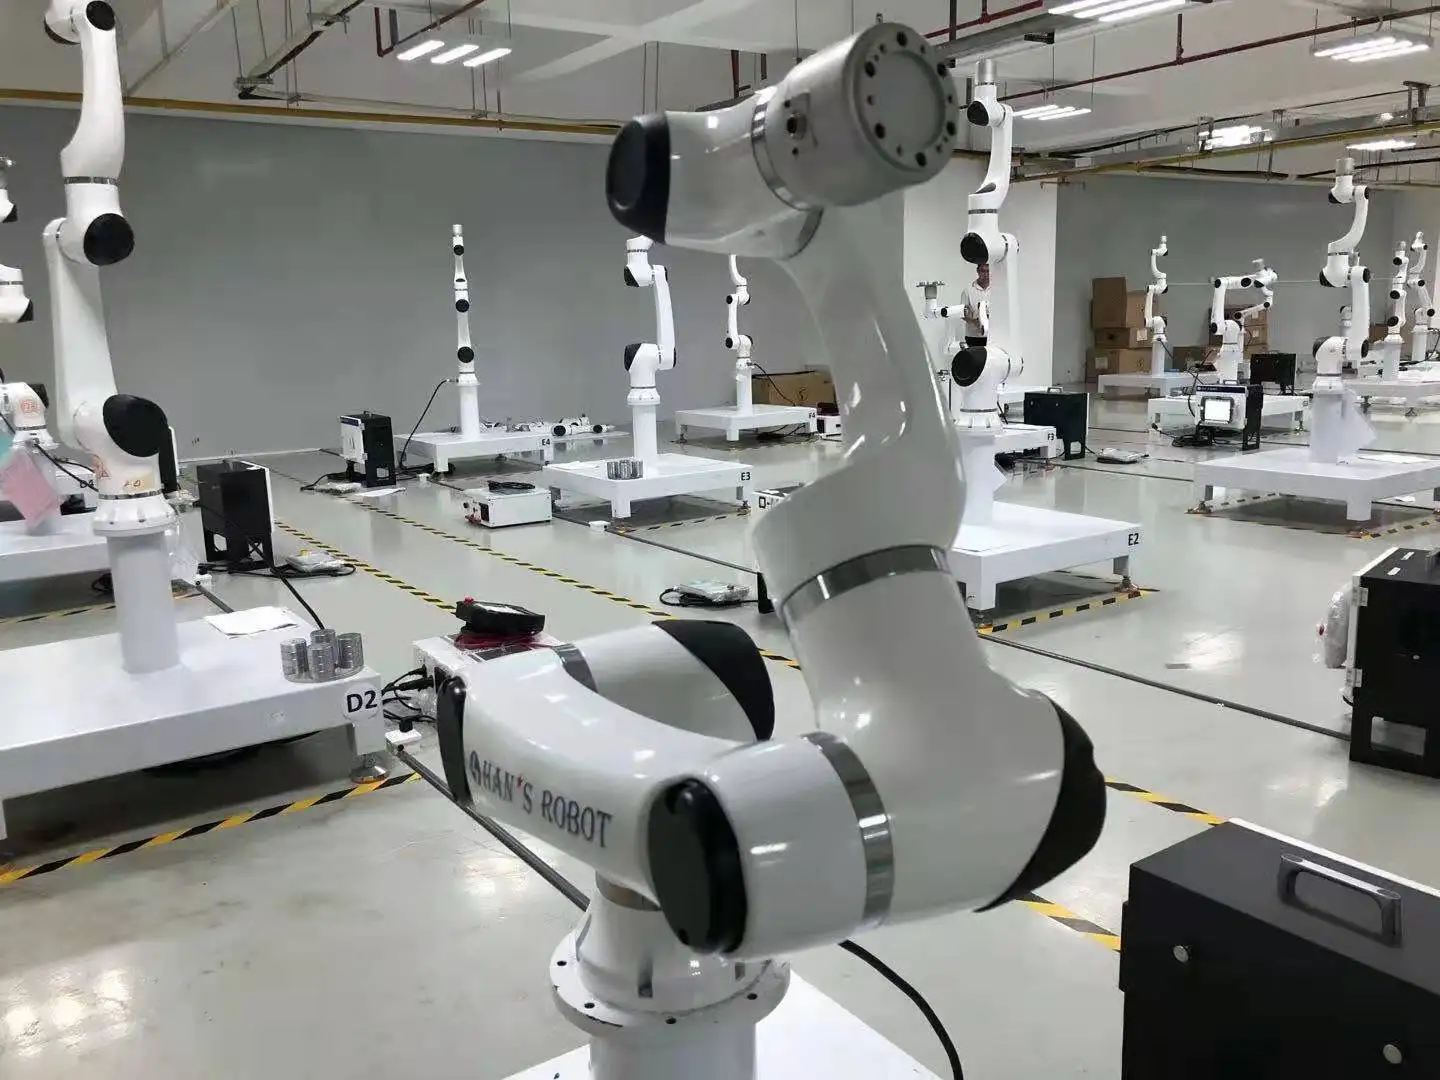 프로그래머블로봇 팔로서 로봇 코봇을 취급하는 6 축암 로봇 한의 스타 모바일 플랫폼